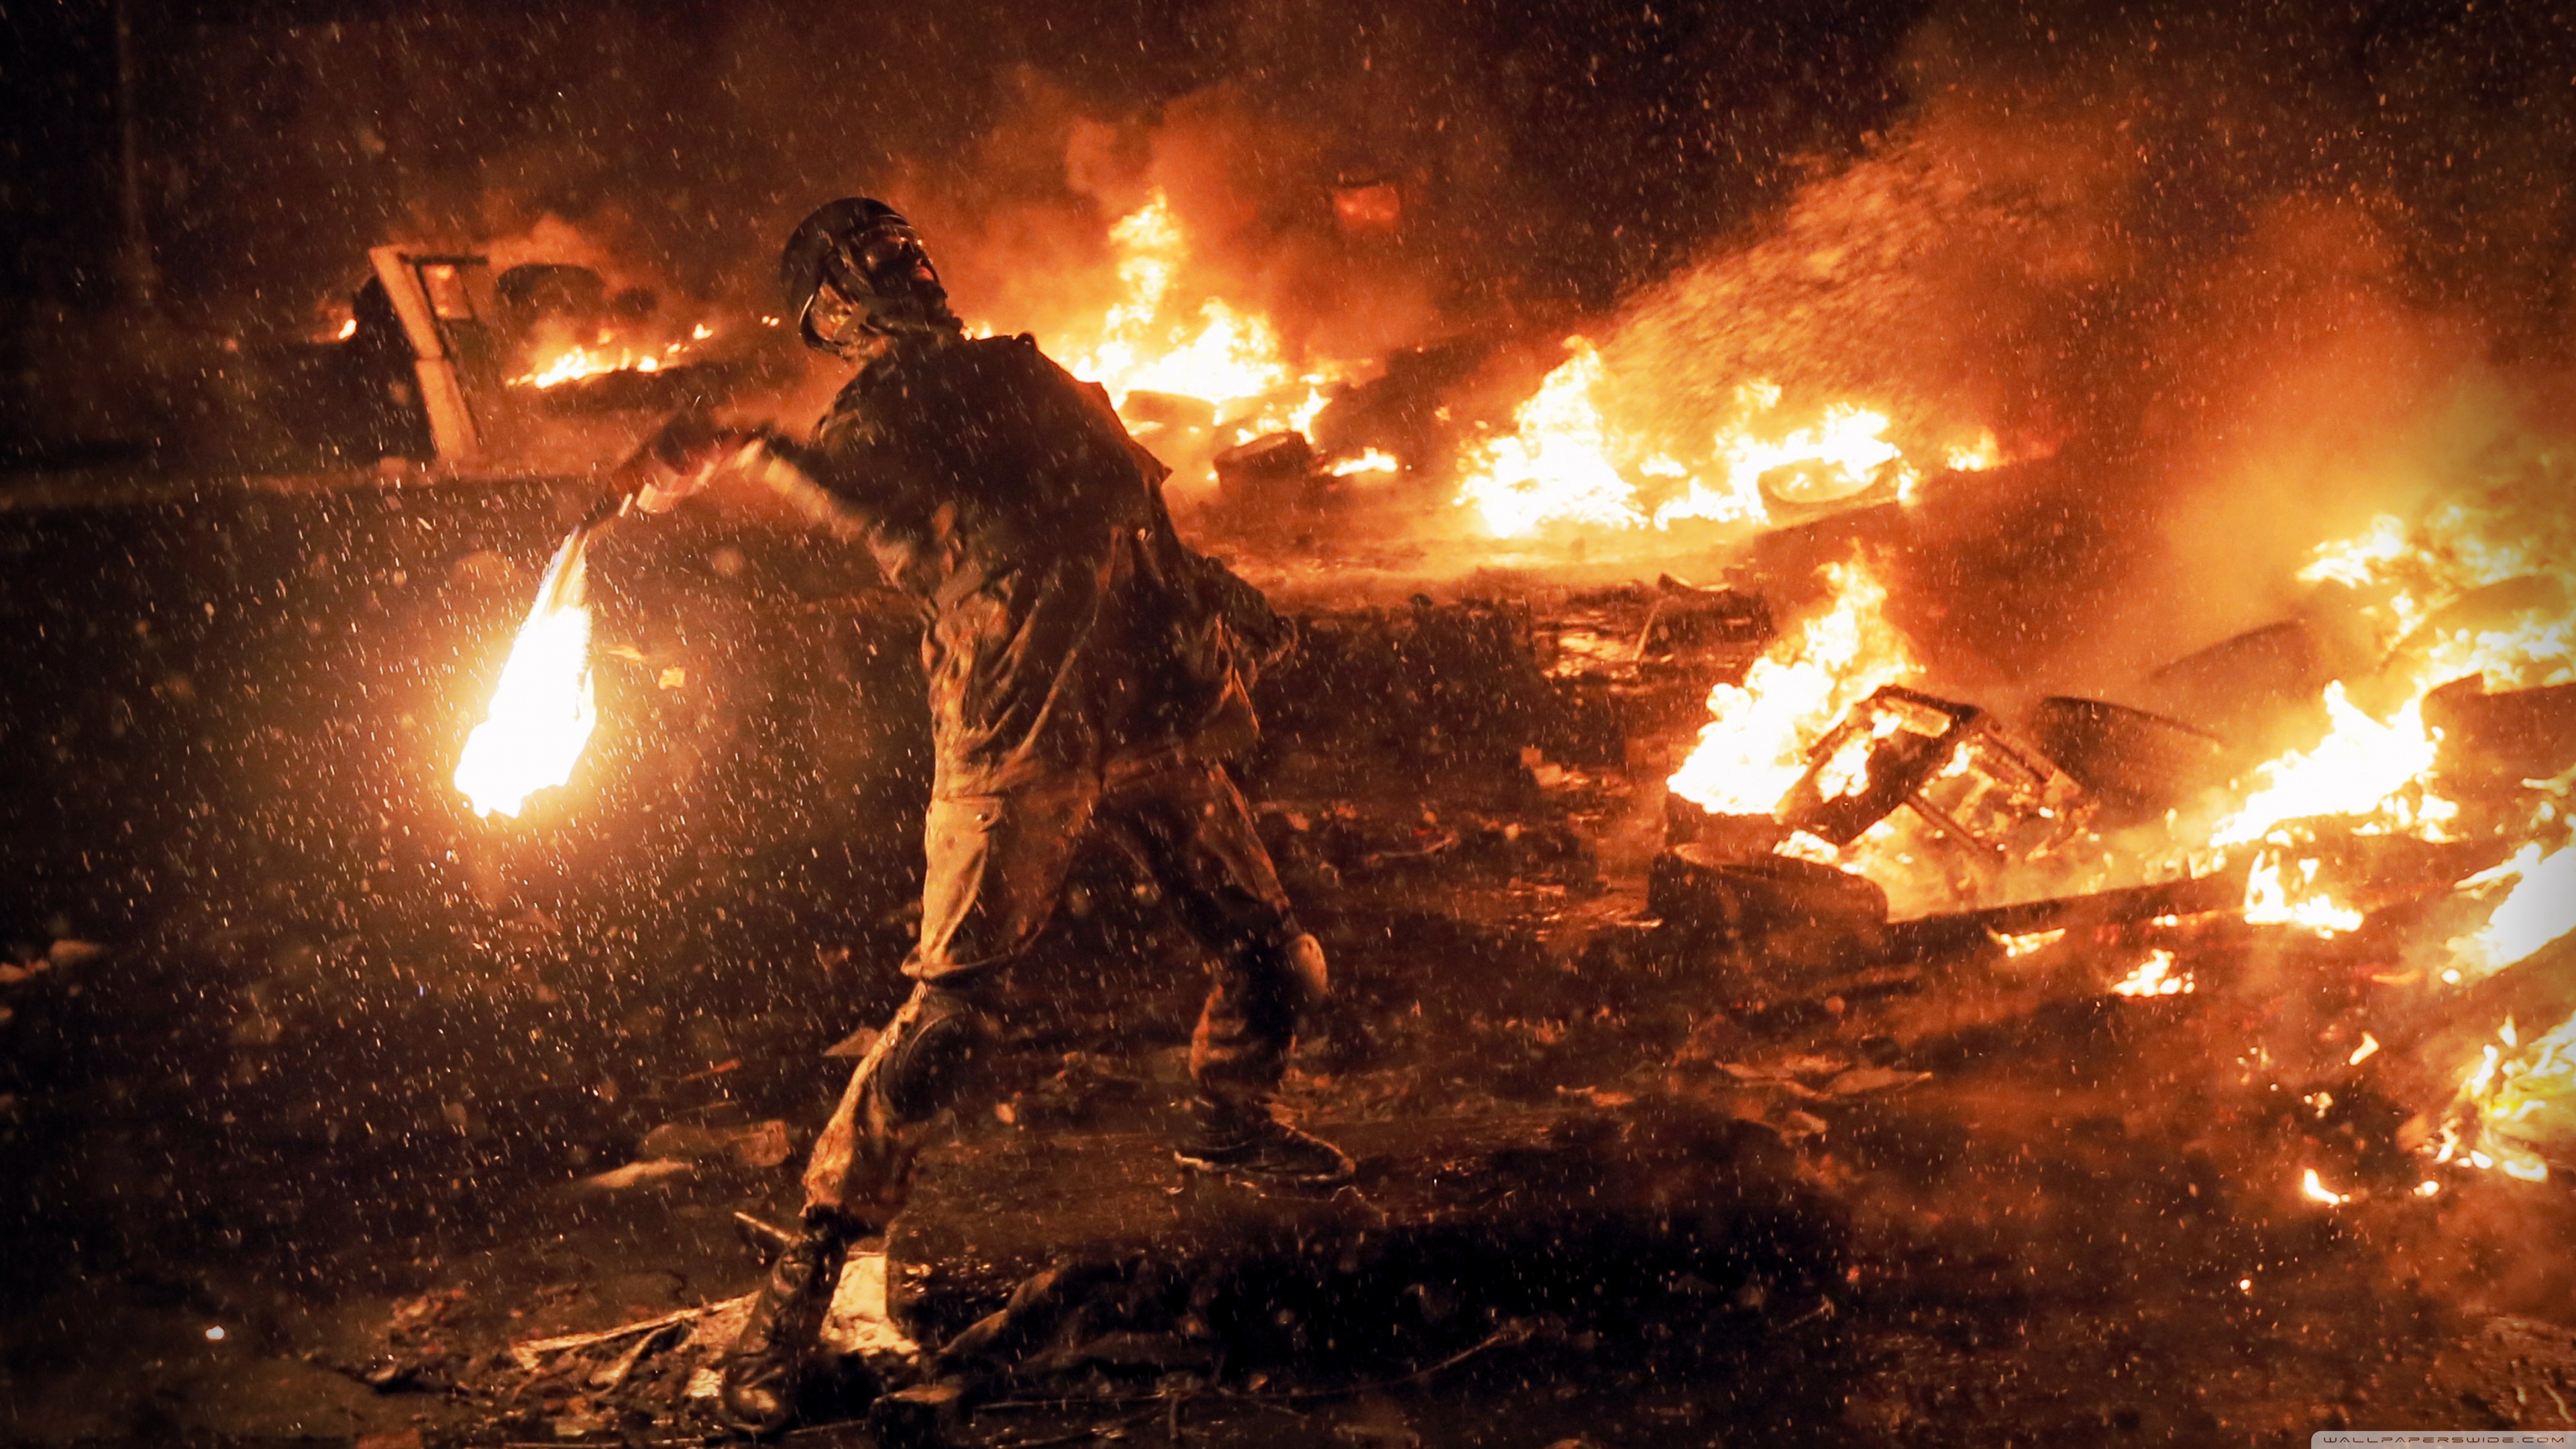 Kiev Revolution #15